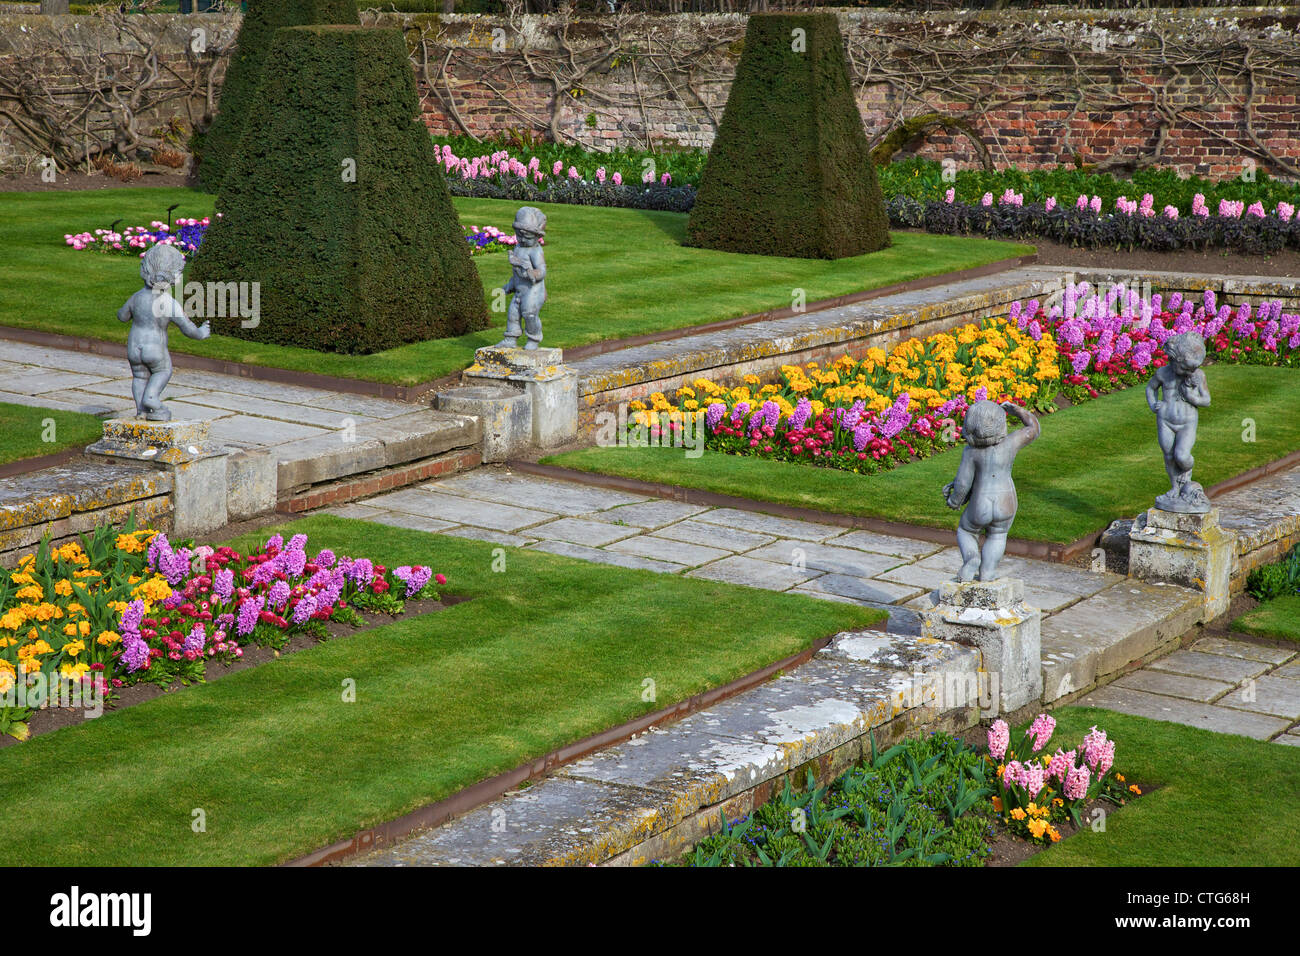 Los jardines formales, el Palacio de Hampton Court, Londres, Surrey, Inglaterra, UK, Reino Unido, GB, Gran Bretaña, Islas Británicas, Europa Foto de stock